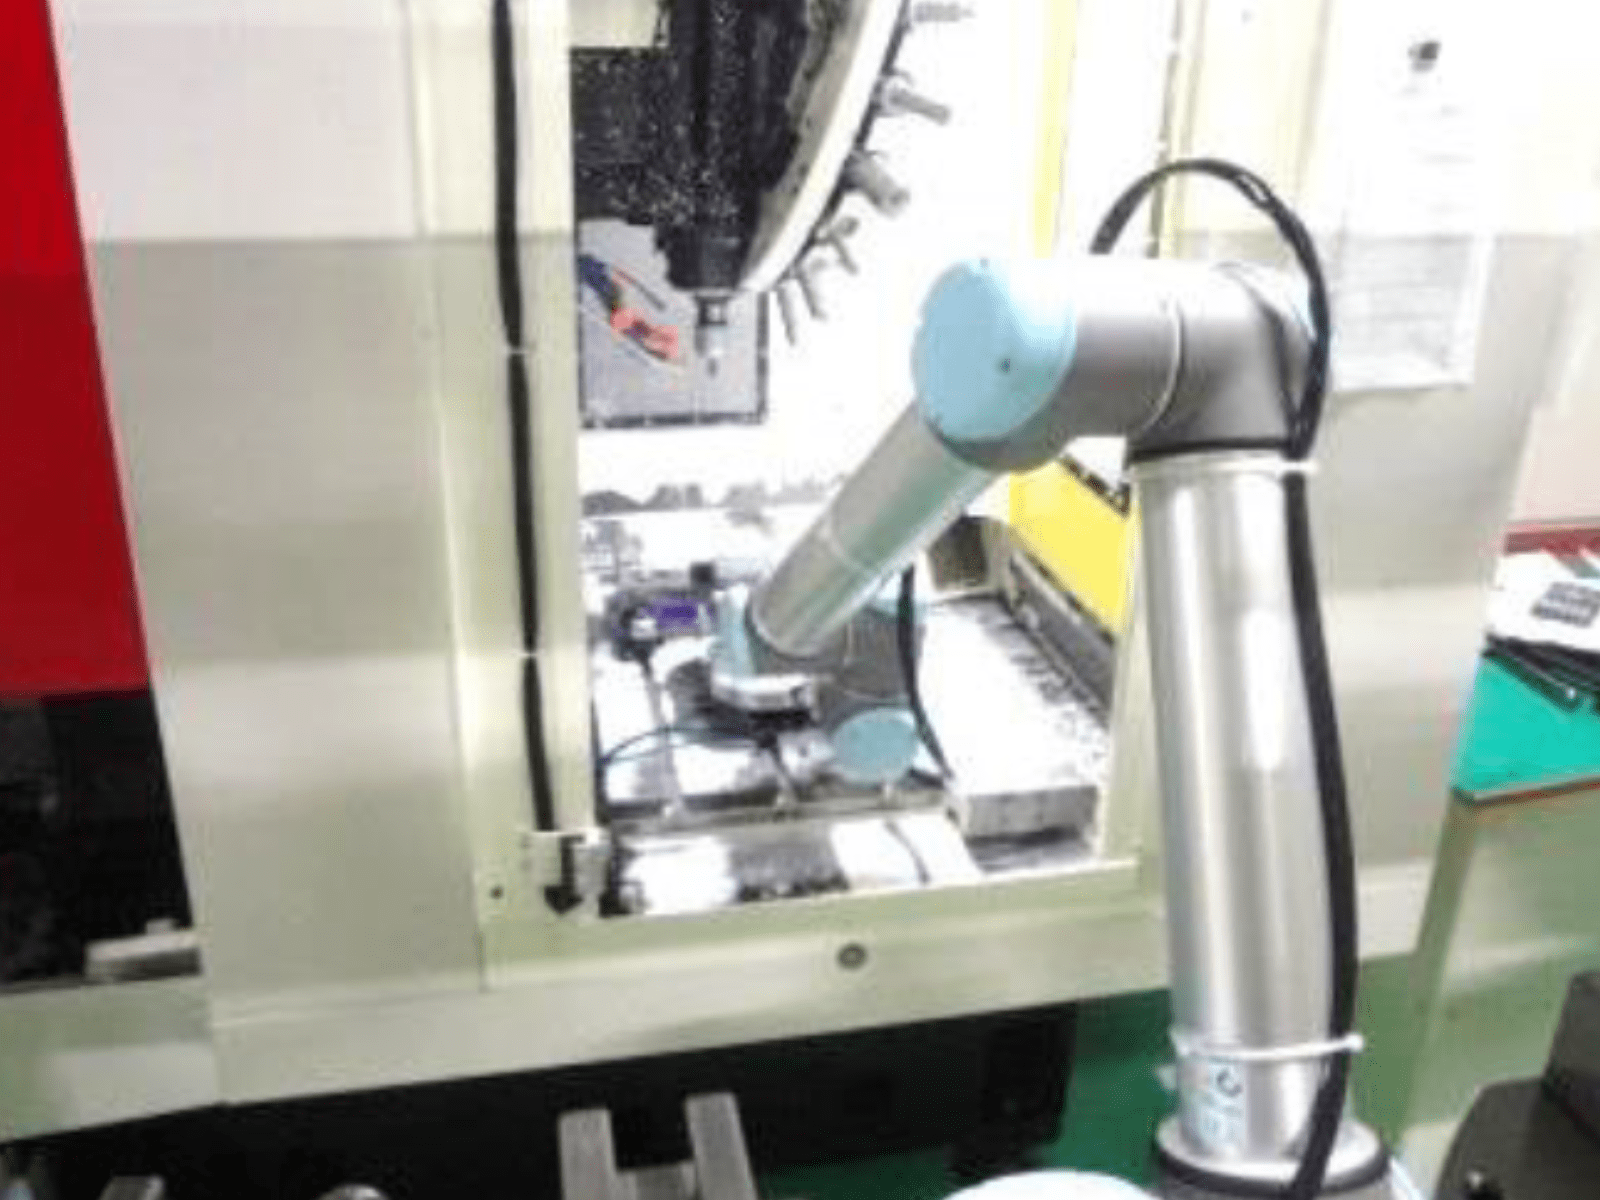 高温の鍛造加工製品のピッキング及び整列箱詰め工程にロボット導入した事例